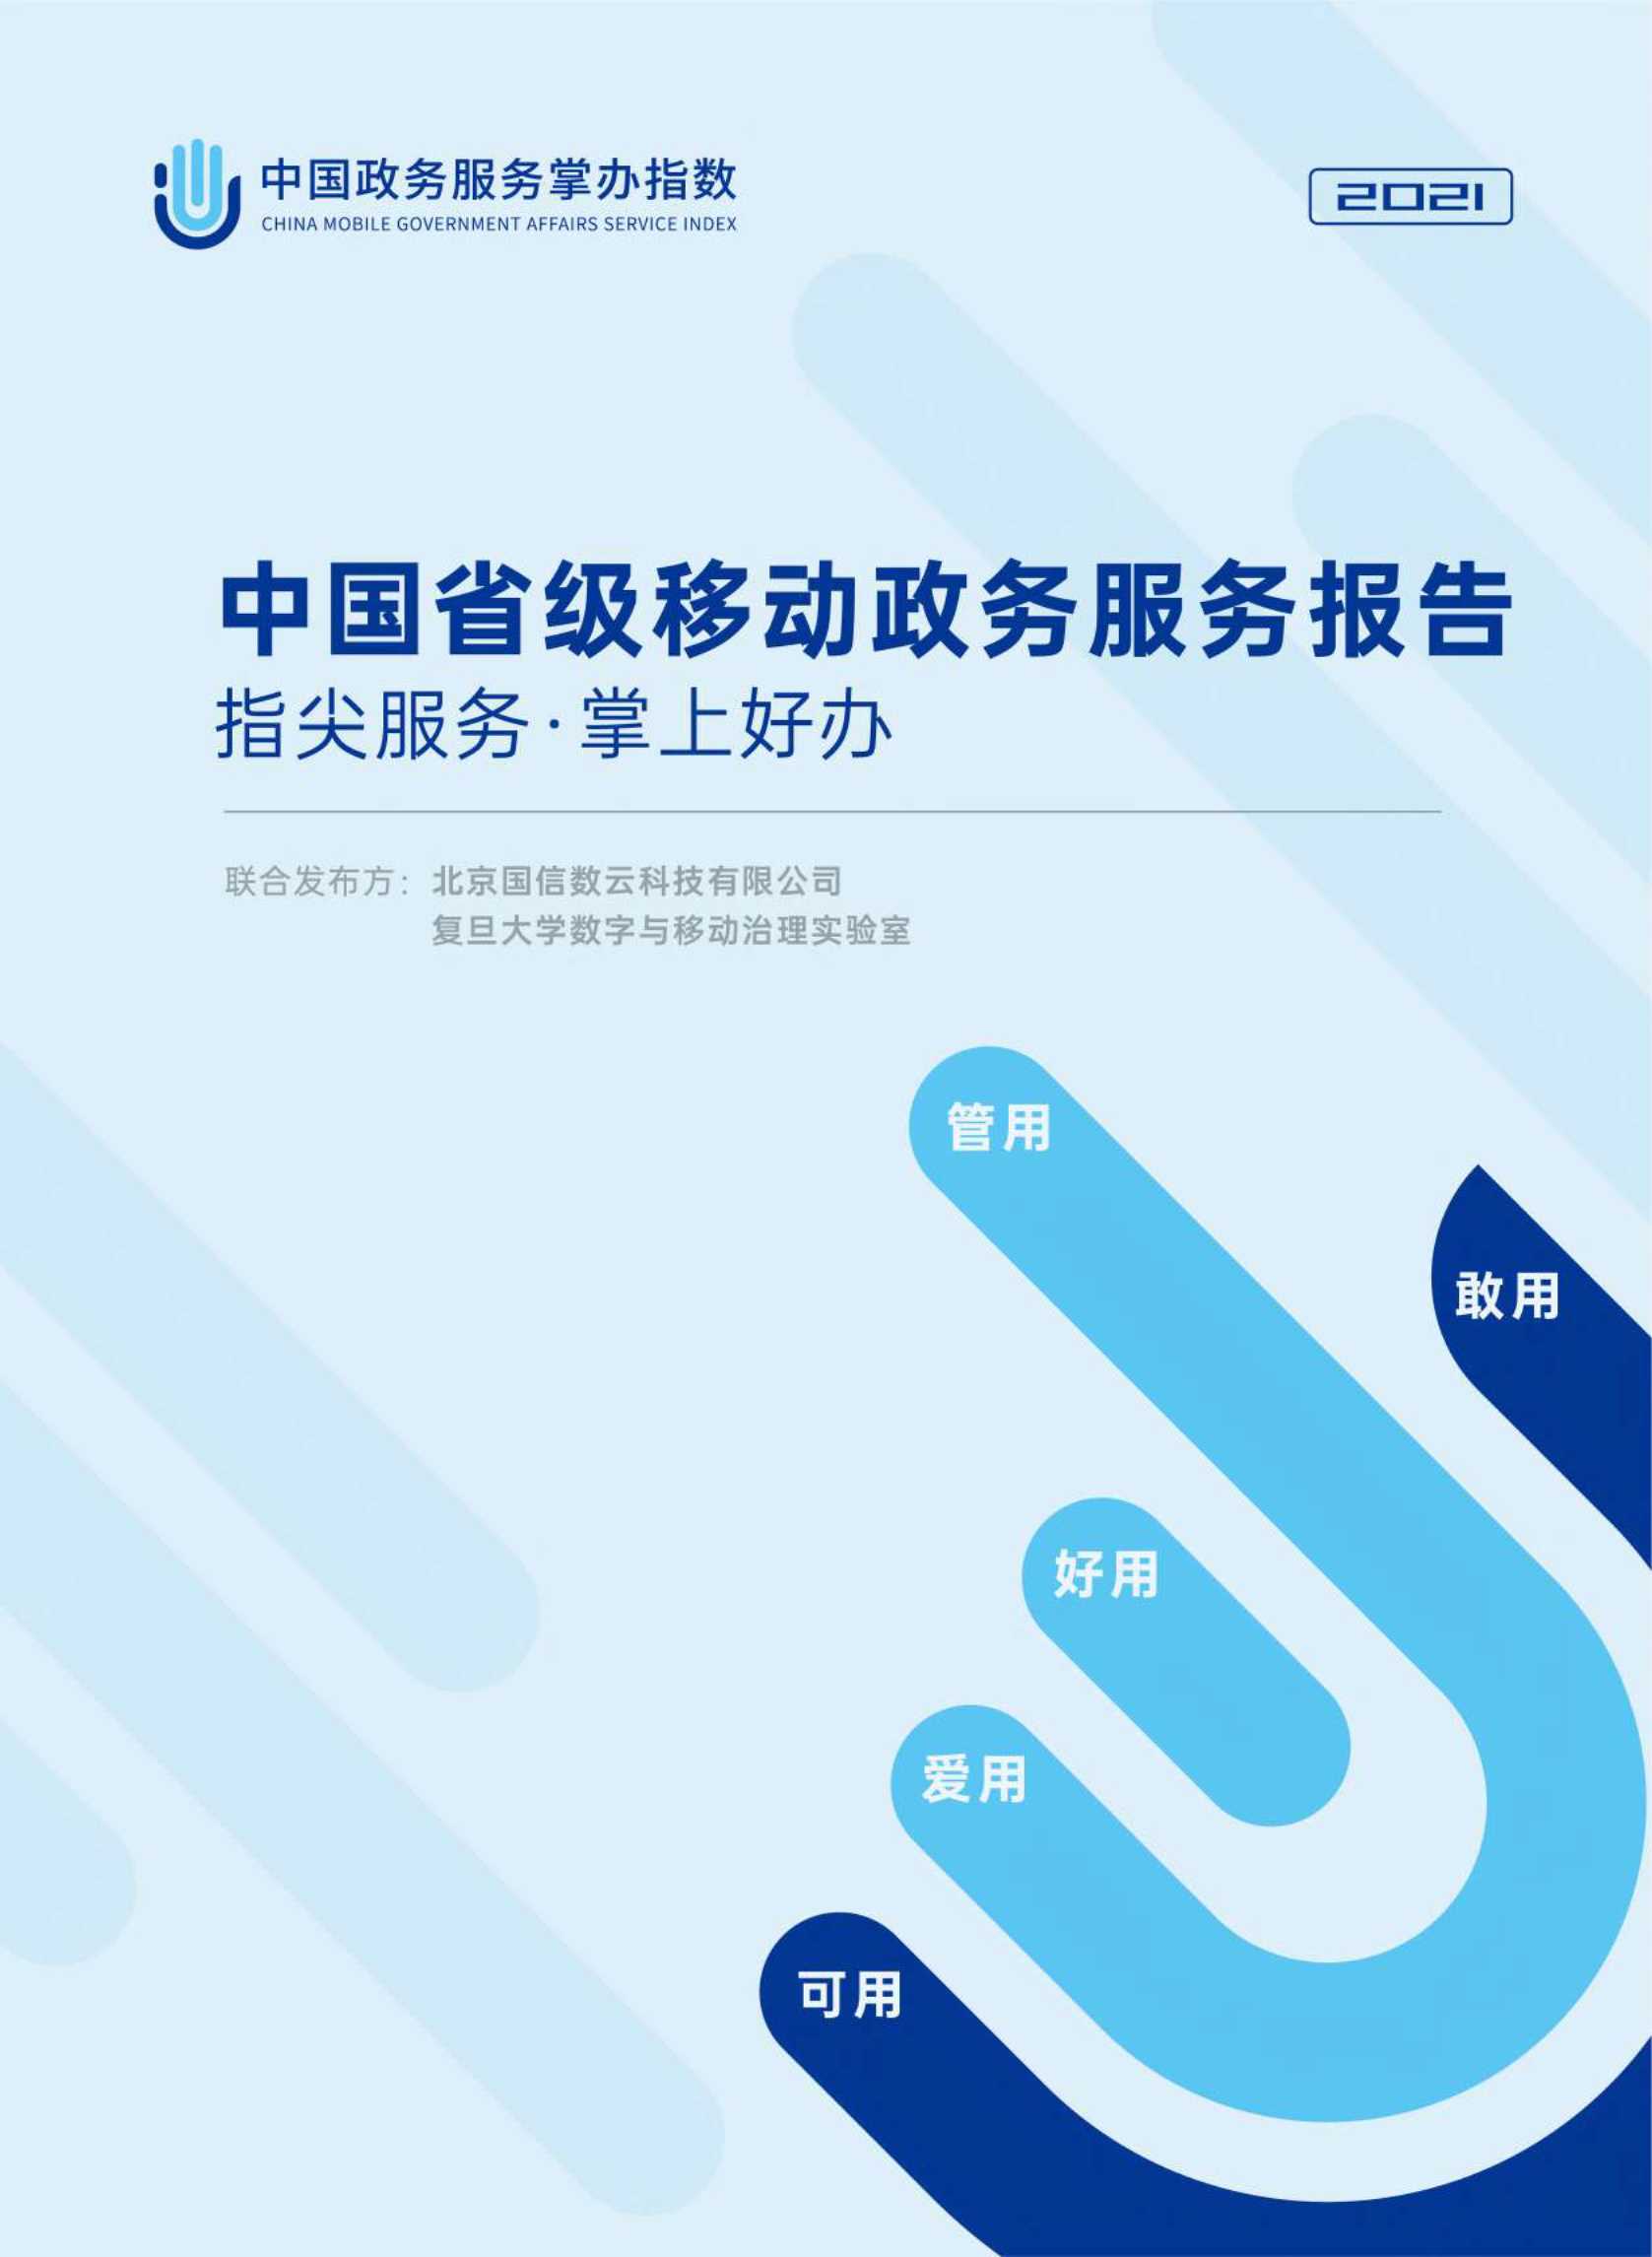 国信数云&复旦大学-中国省级移动政务服务报告-2021.06-48页